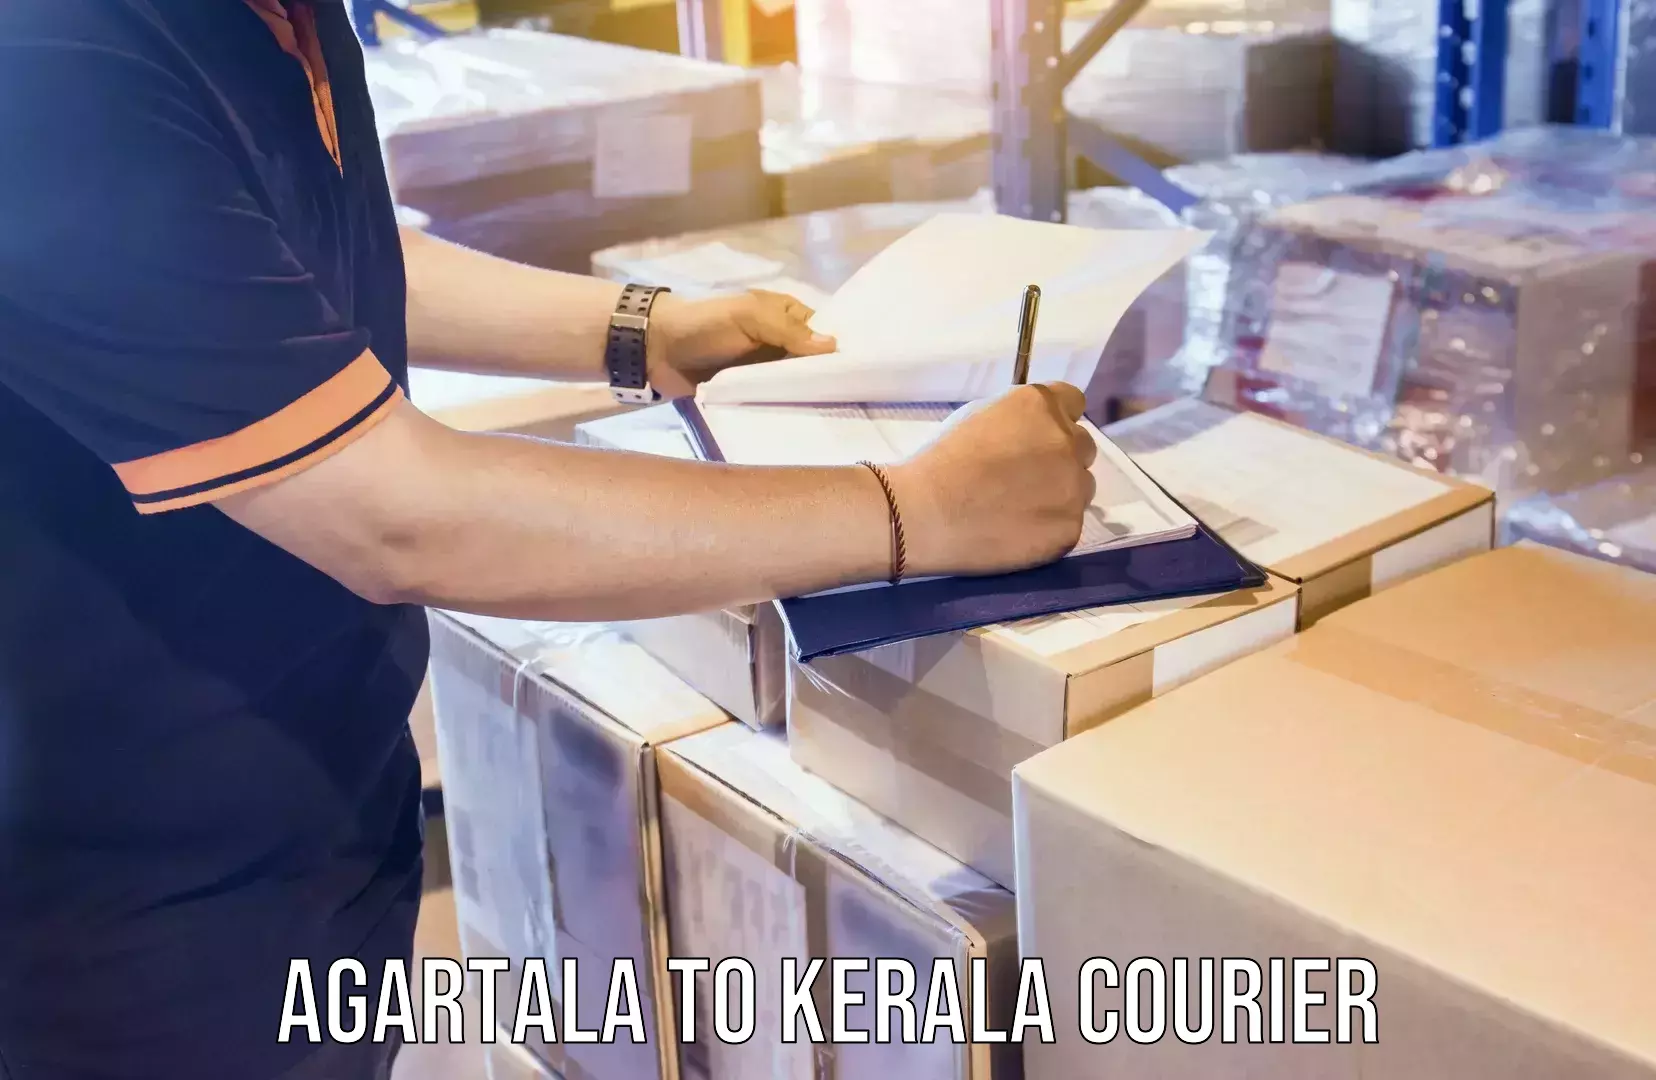 Pharmaceutical courier Agartala to Kerala